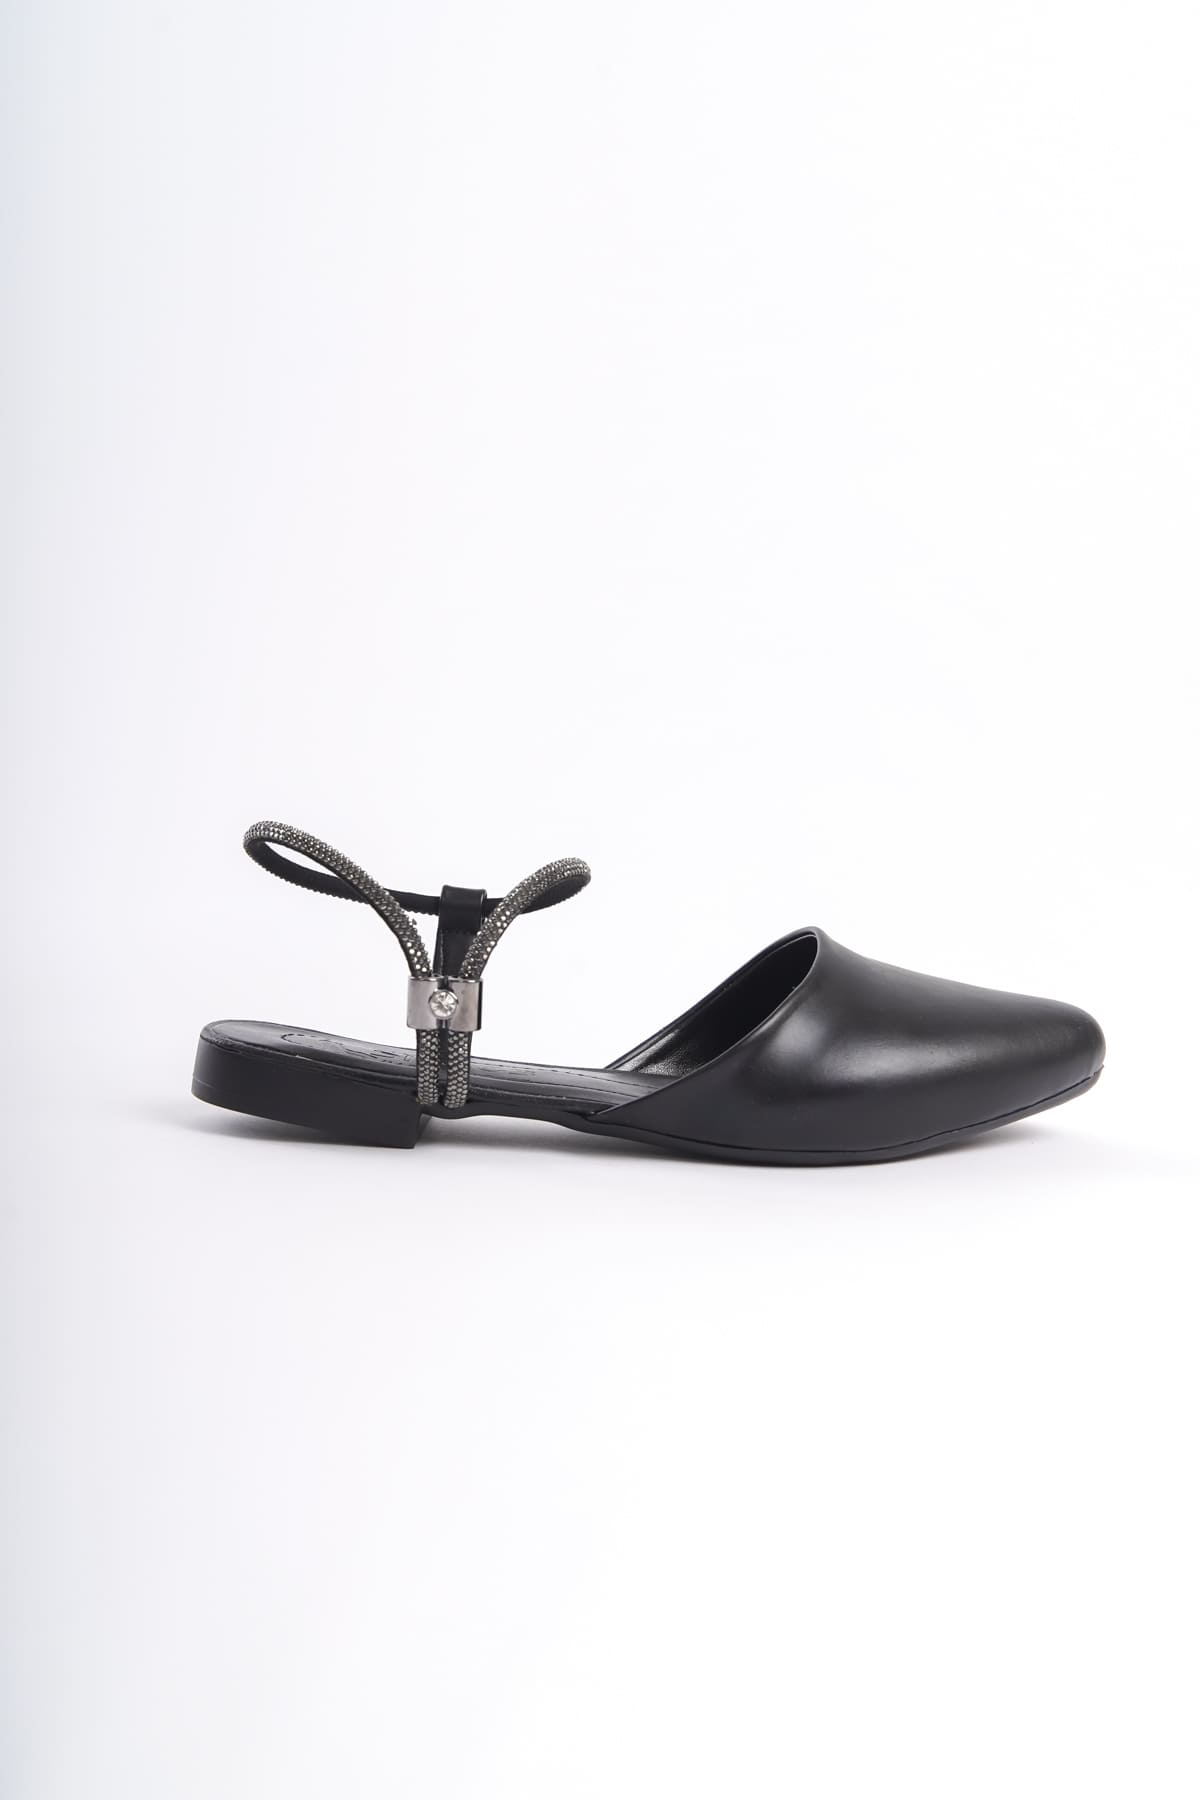 CLZ948 NA Lastikli Ortopedik Rahat Taban Bilekten Taş Detaylı Kadın Babet Ayakkabı ST Siyah